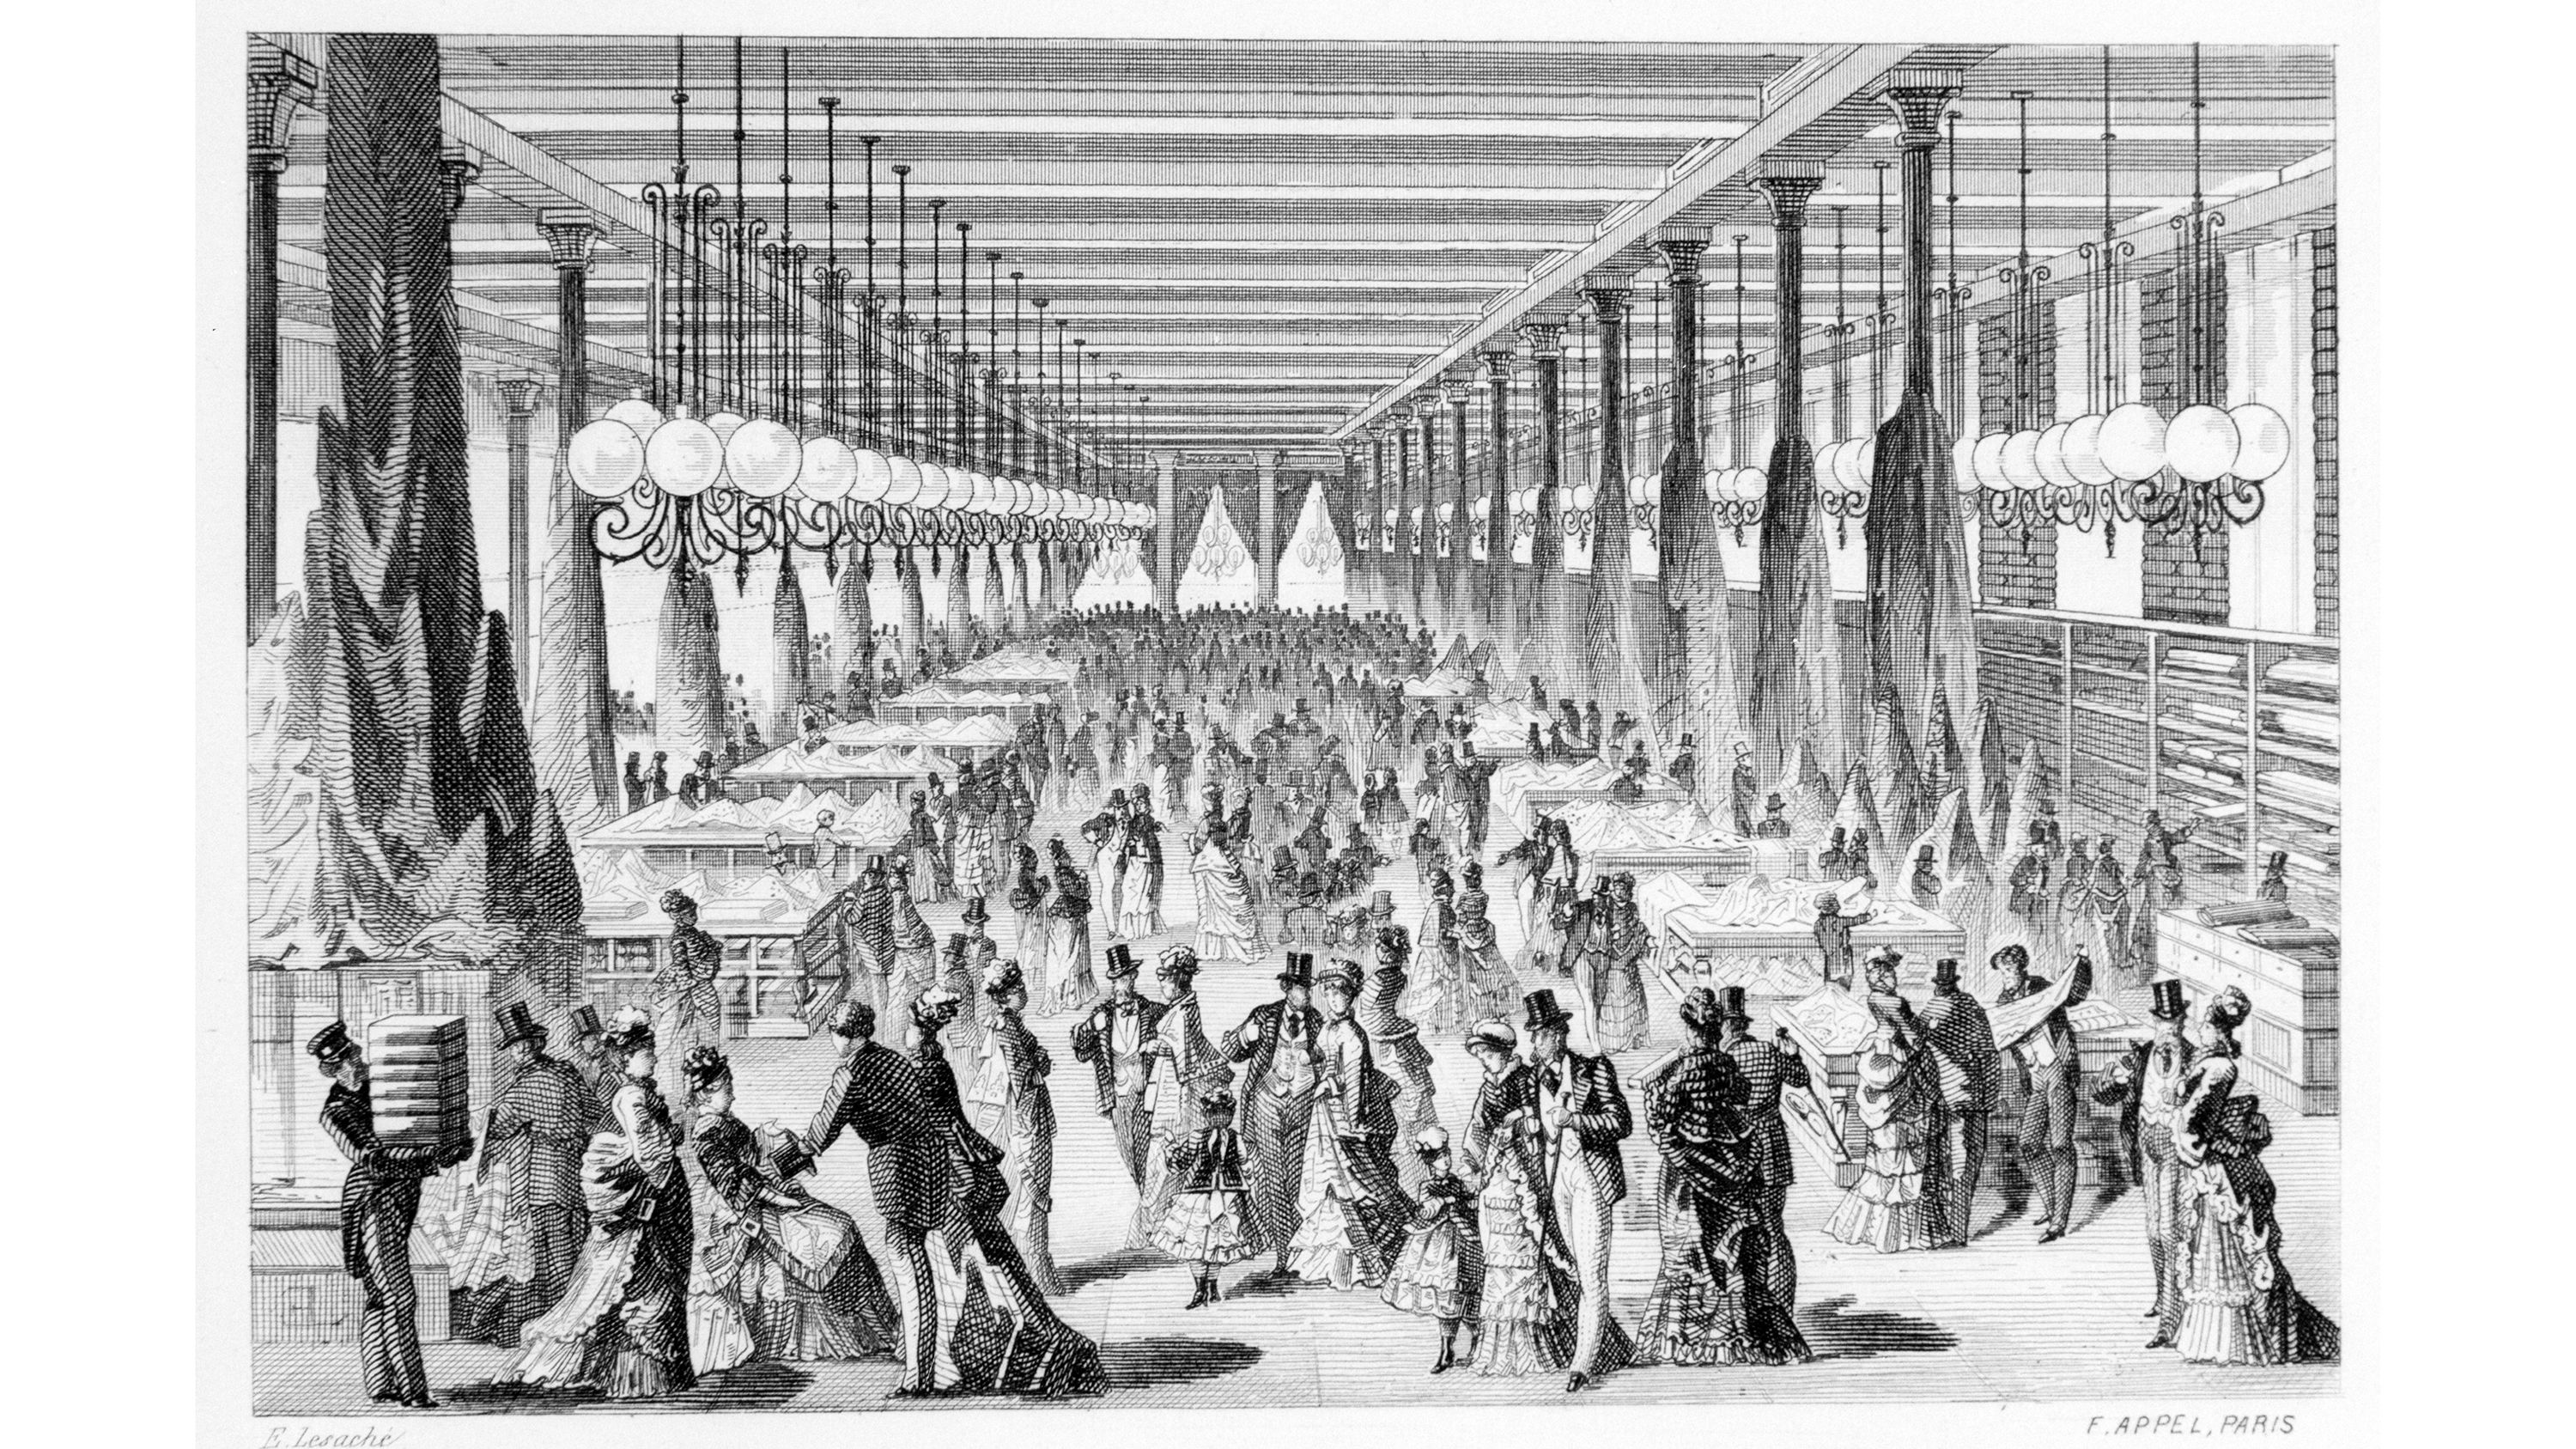 Le Bon Marché: The First Department Store in France — Textile Tours of Paris